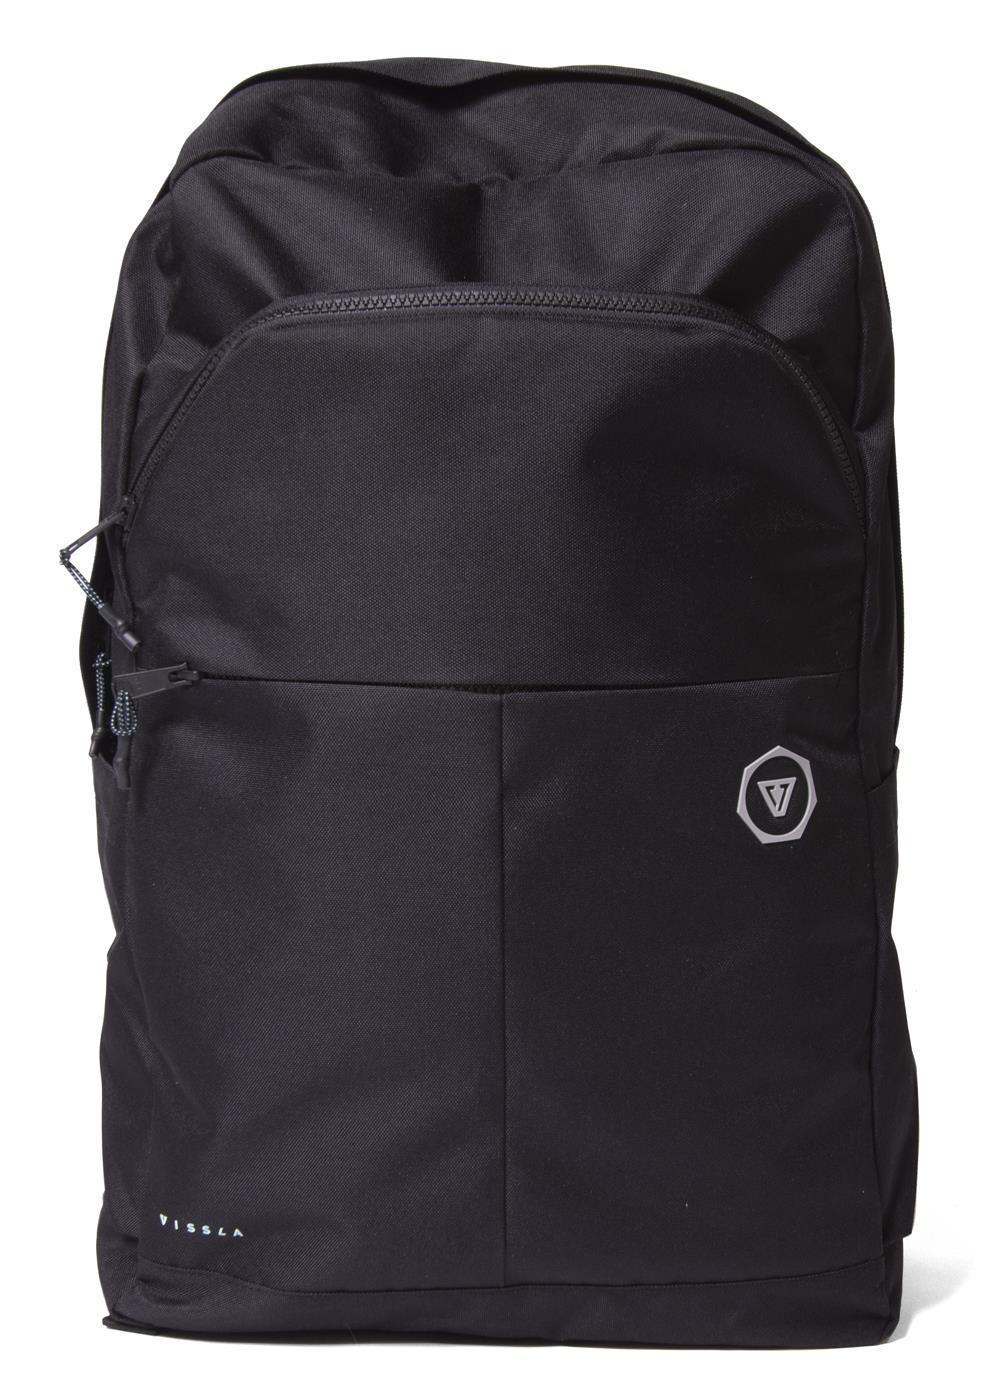 VISSLA - Road Tripper Eco Backpack - Black